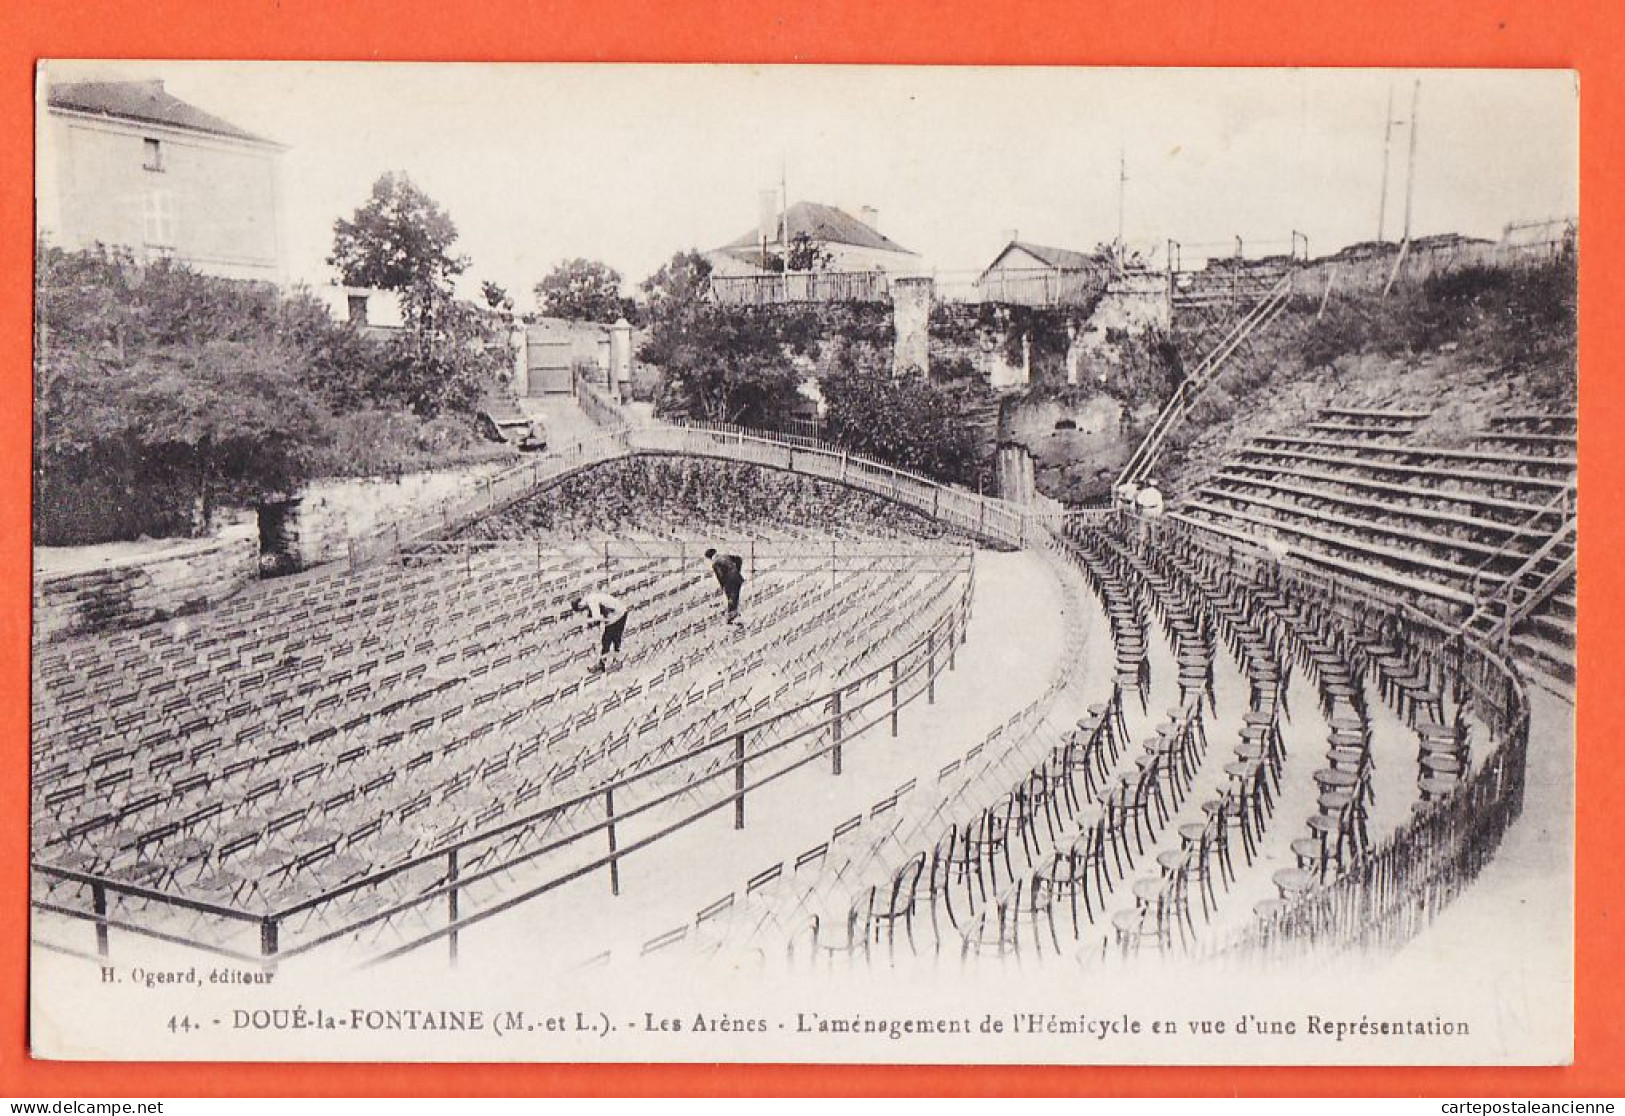 01644 / DOUE-LA-FONTAINE ANGERS 49-Maine Loire Arenes Amenagement Hémicycle En Vue Représentation 1910s OGEARD 44 - Doue La Fontaine